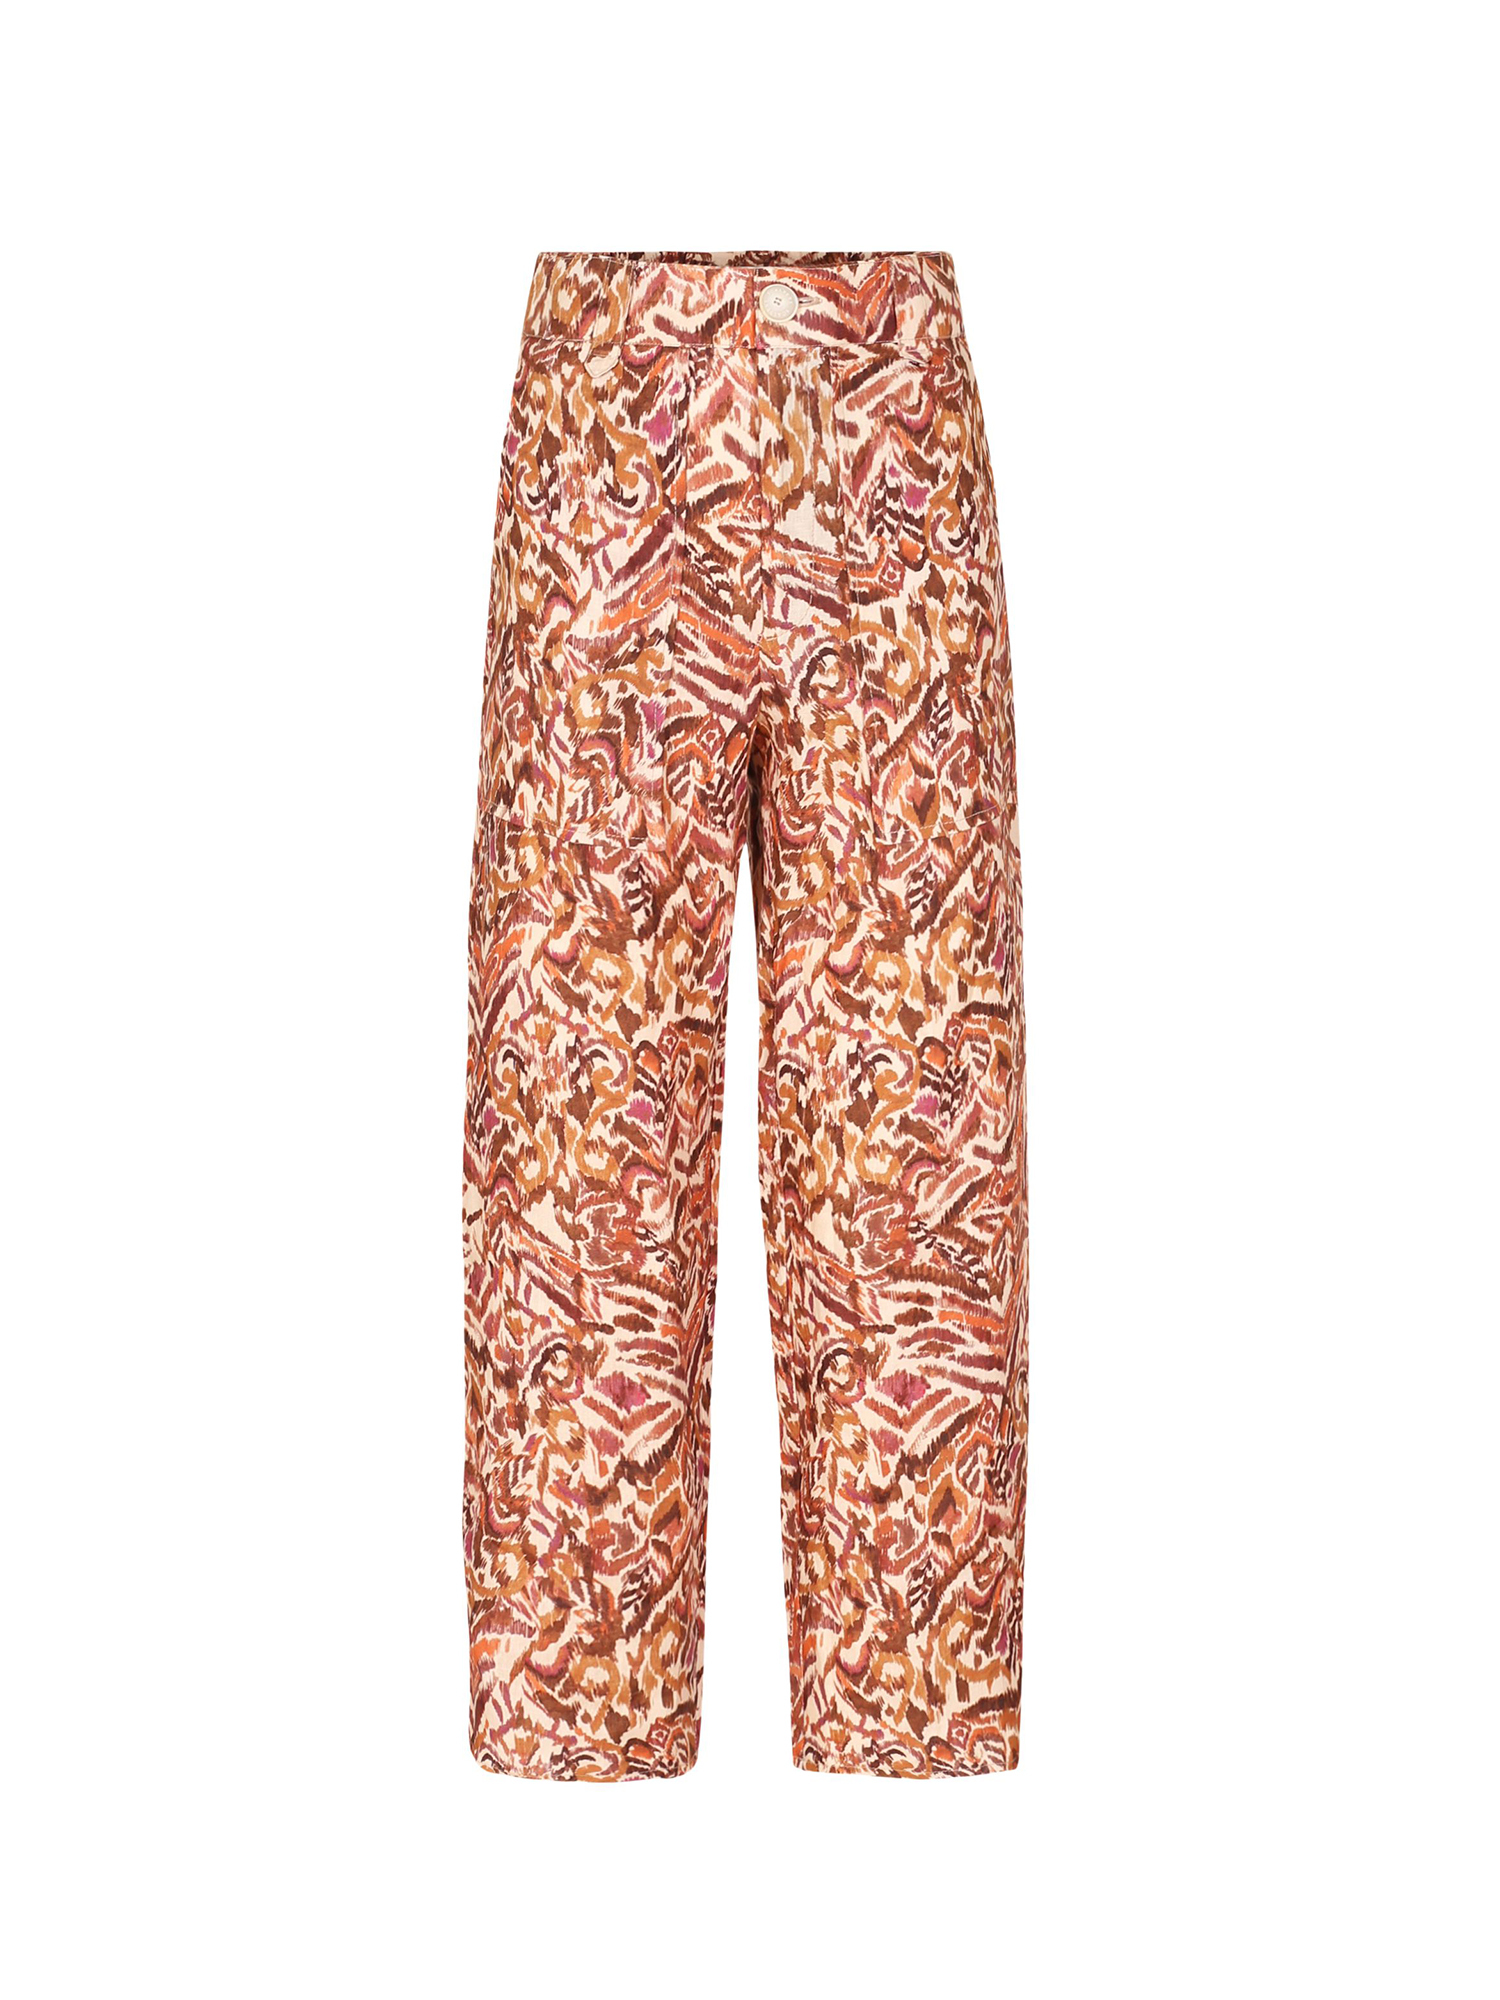 Spodnie Odzież Scalpers Hose Amalfi w kolorze Koralowym 